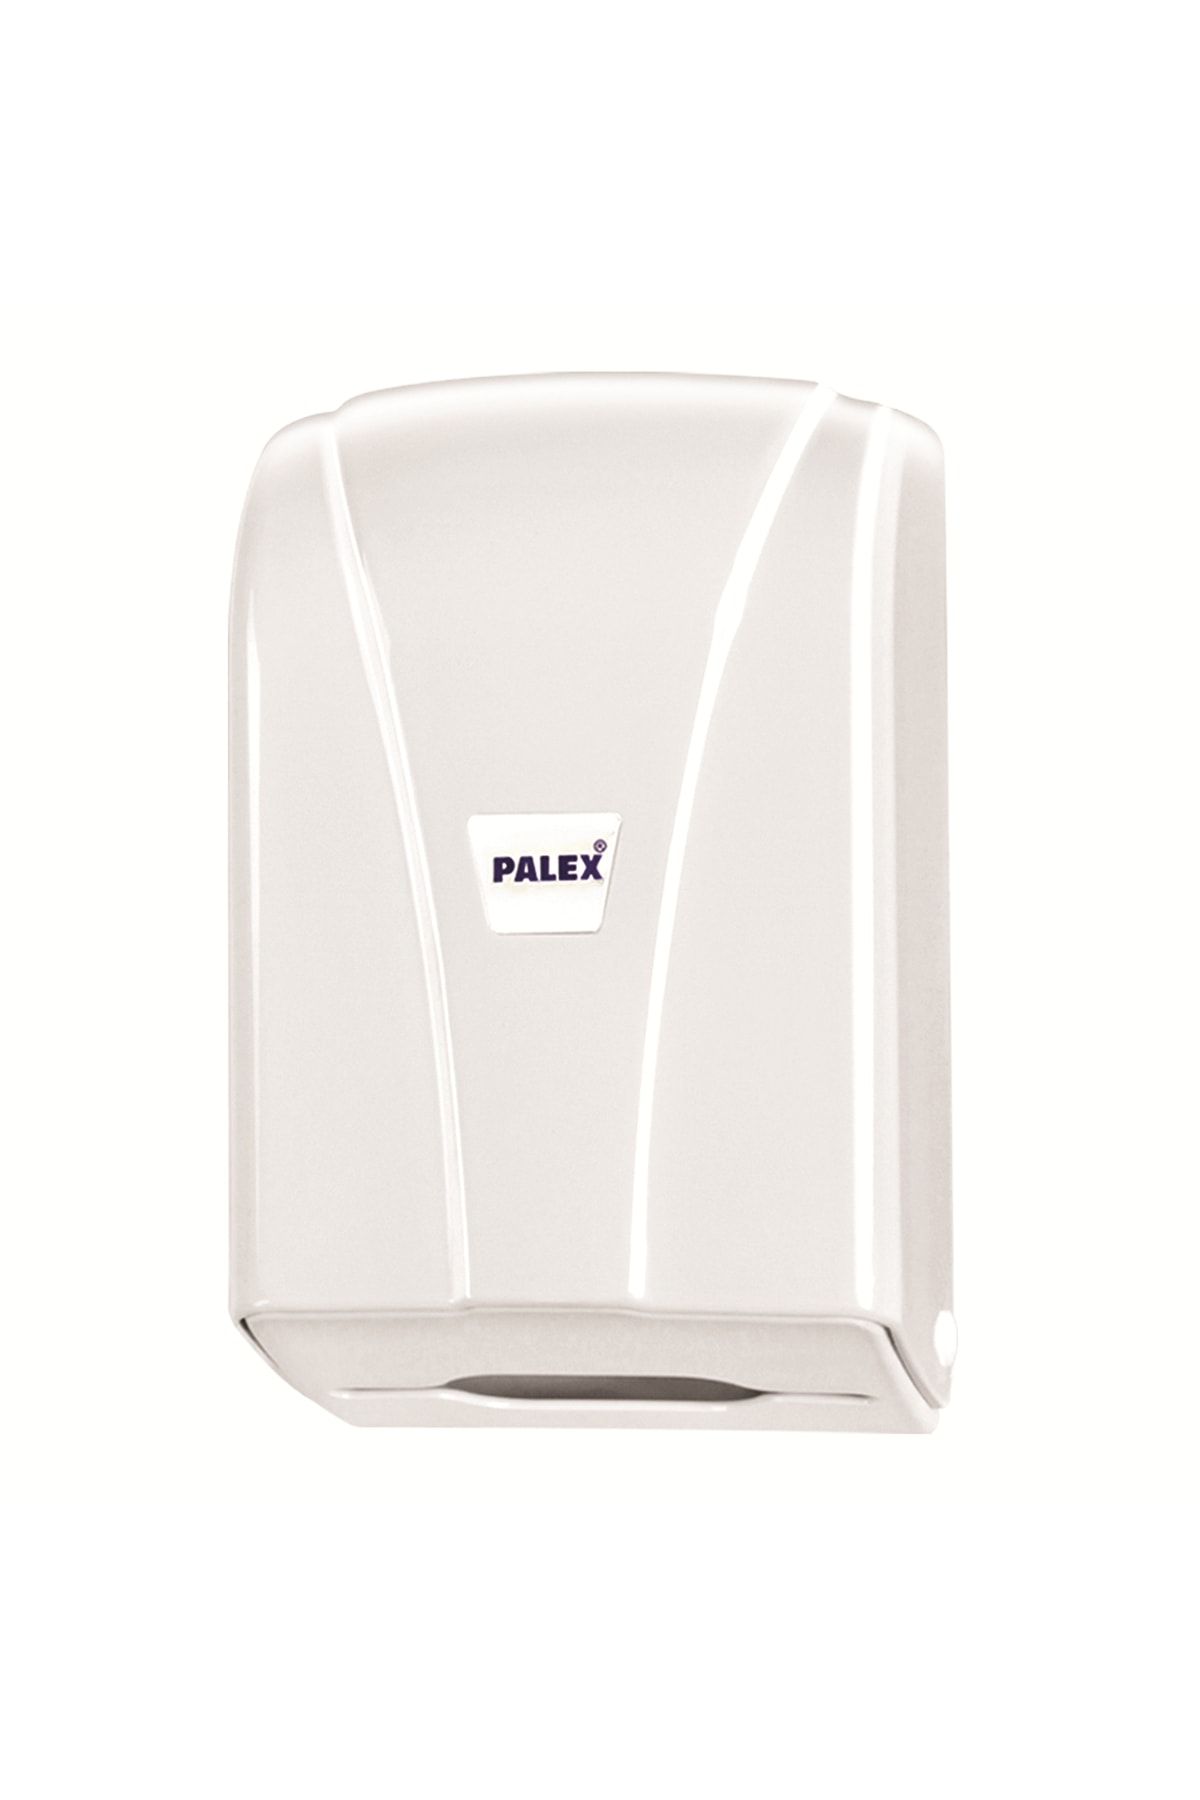 Palex (ün-ev) C Katlama Tuvalet Kağıtlığı (tuvalet Kağıt Dispenseri) Beyaz 3438-0